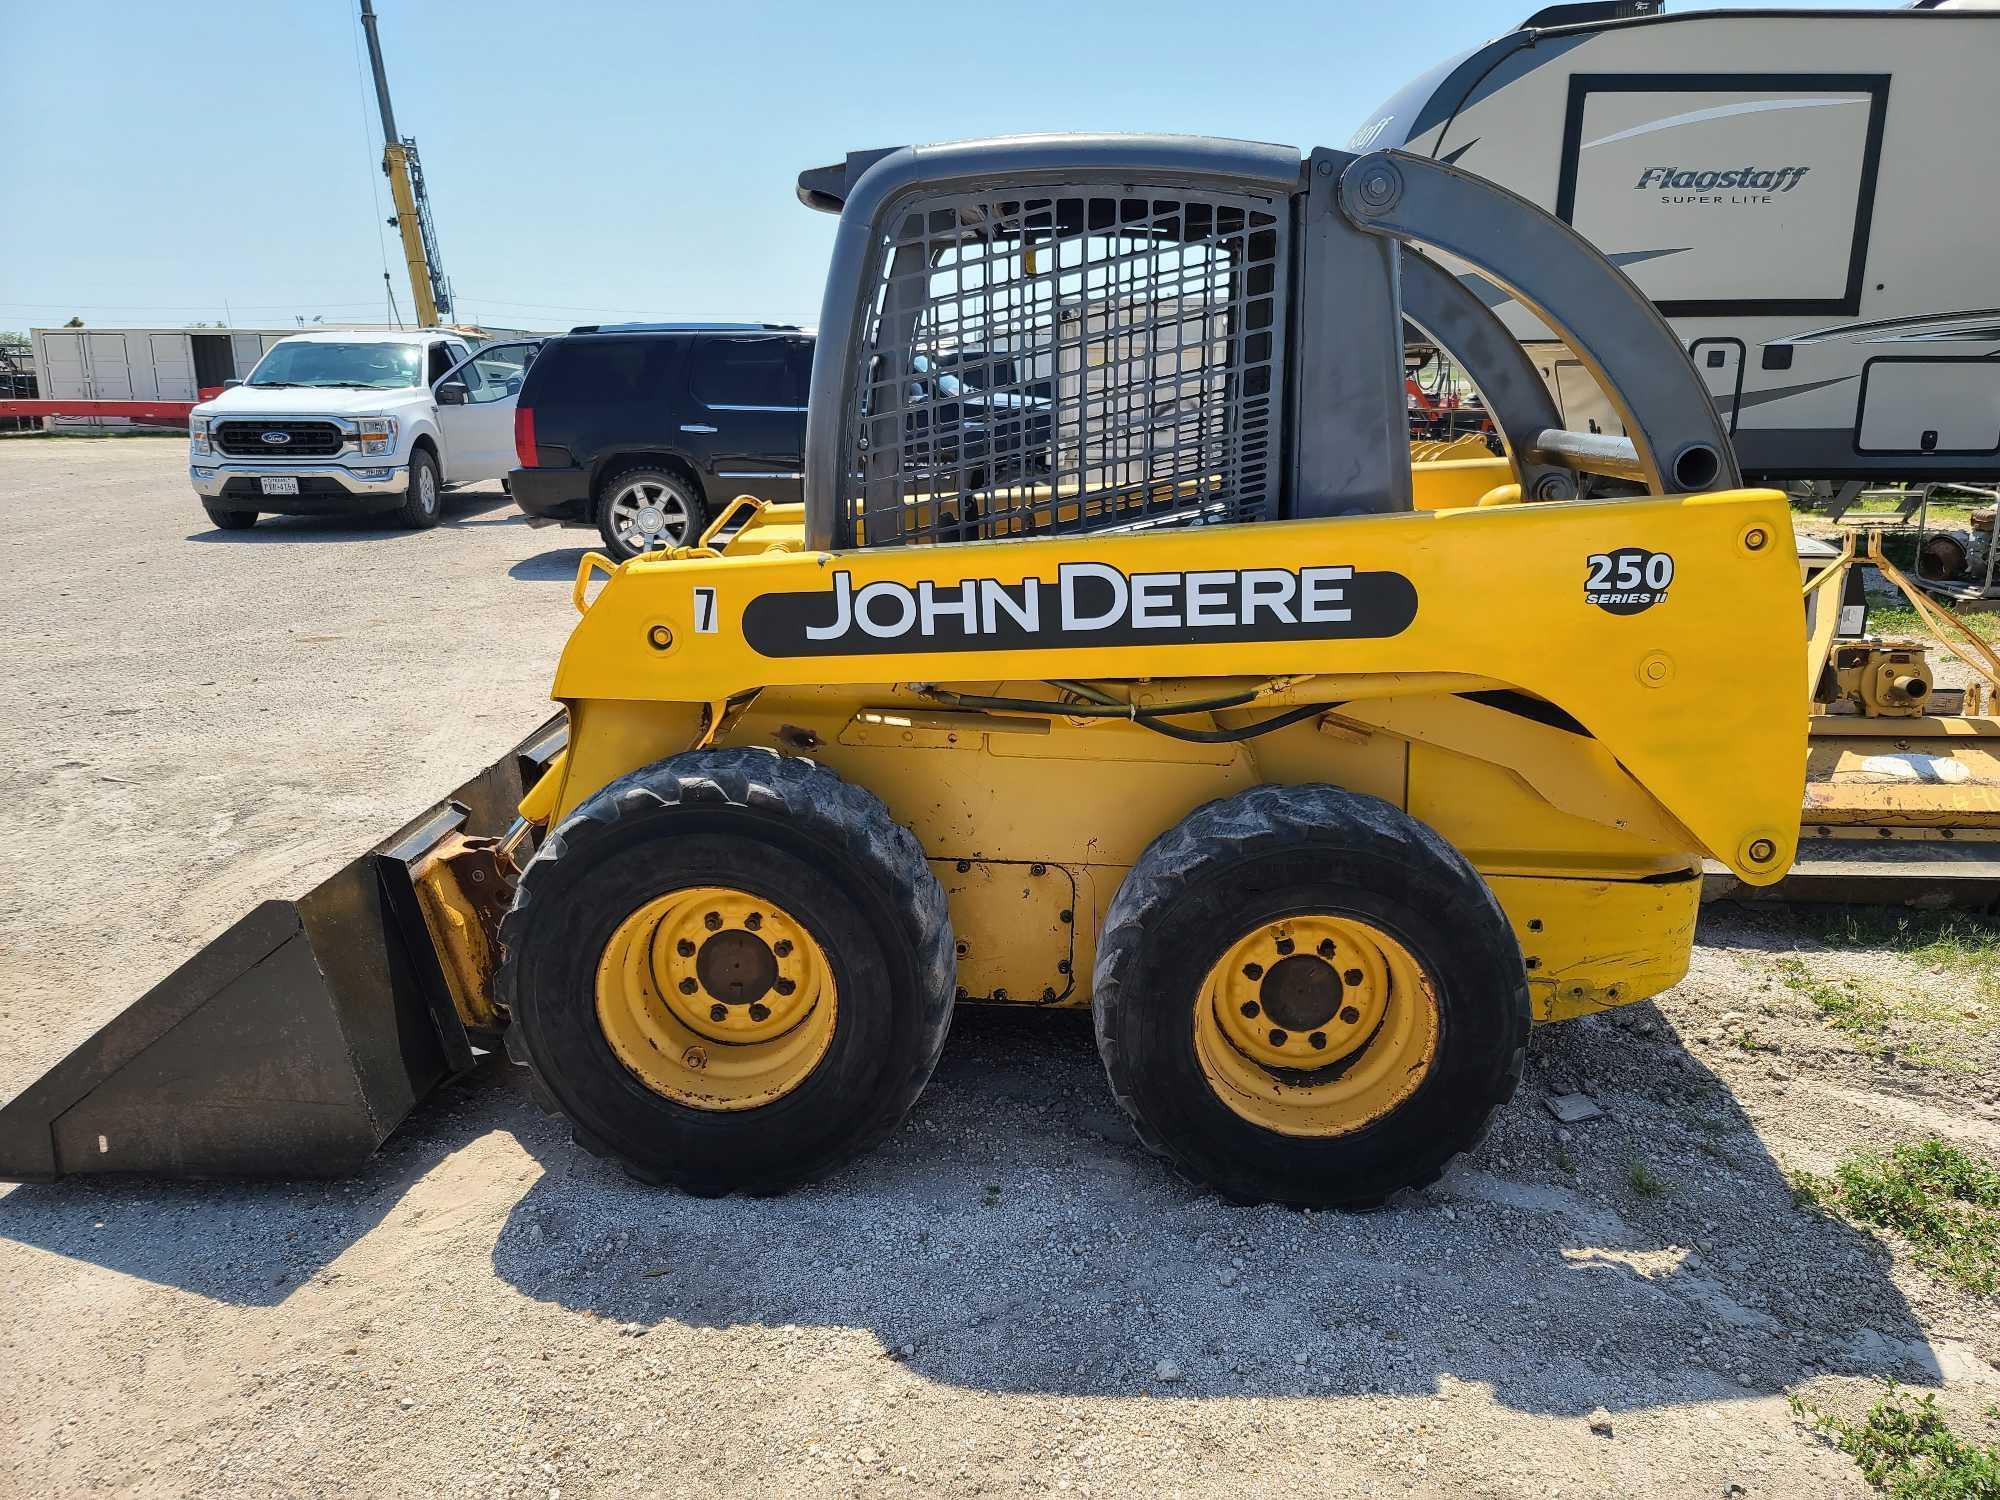 John Deere 250 Series II Skid Steer Loader